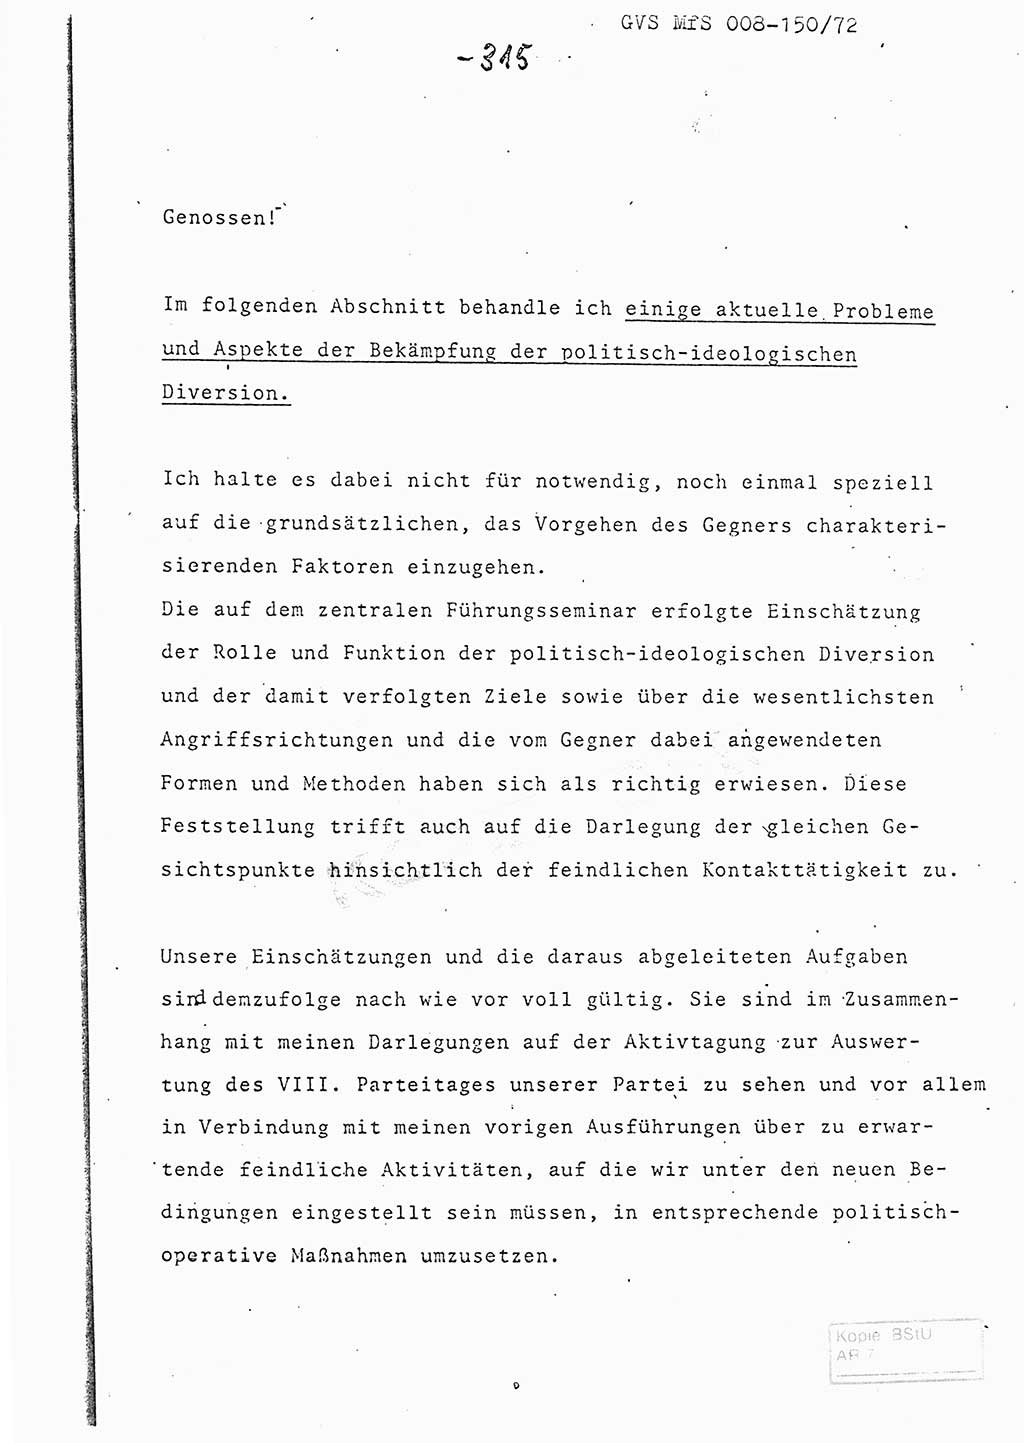 Referat (Entwurf) des Genossen Minister (Generaloberst Erich Mielke) auf der Dienstkonferenz 1972, Ministerium für Staatssicherheit (MfS) [Deutsche Demokratische Republik (DDR)], Der Minister, Geheime Verschlußsache (GVS) 008-150/72, Berlin 25.2.1972, Seite 315 (Ref. Entw. DK MfS DDR Min. GVS 008-150/72 1972, S. 315)